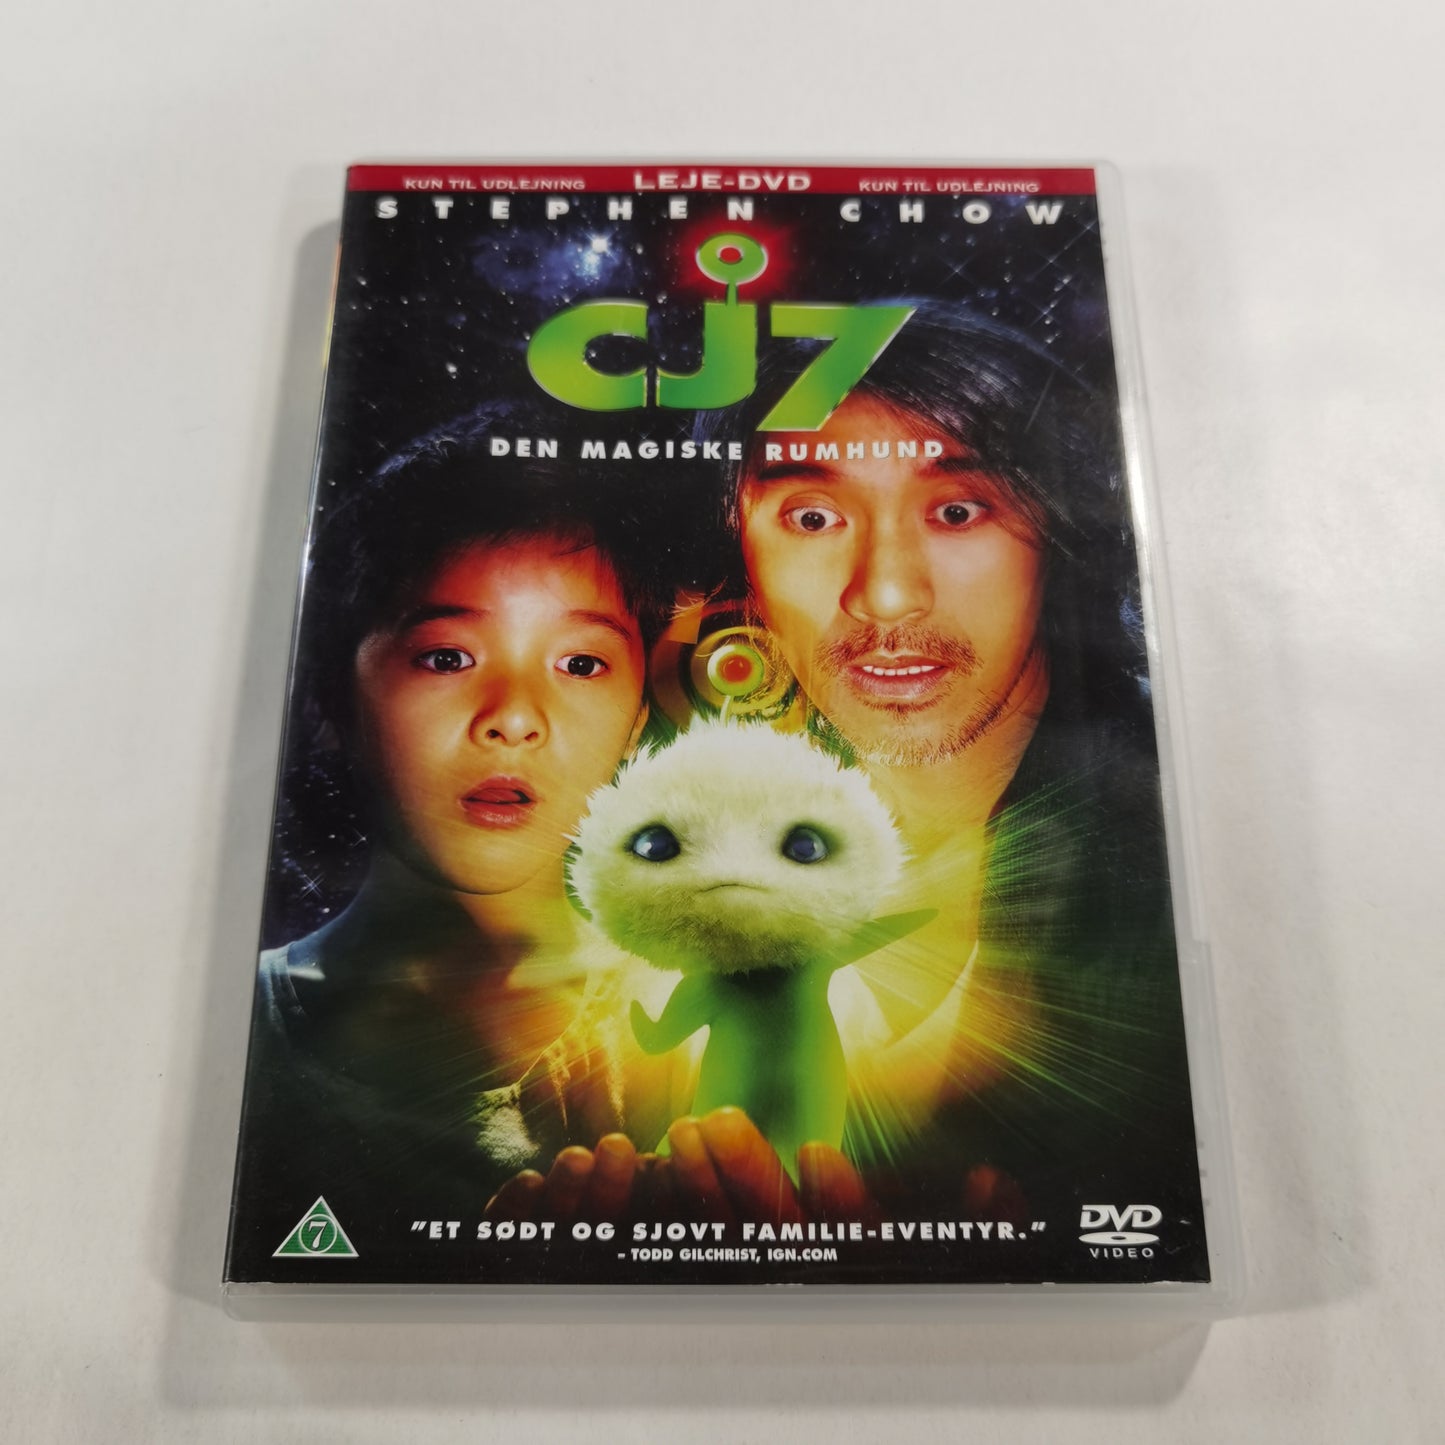 CJ7 (2007) - DVD DK 2008 RC